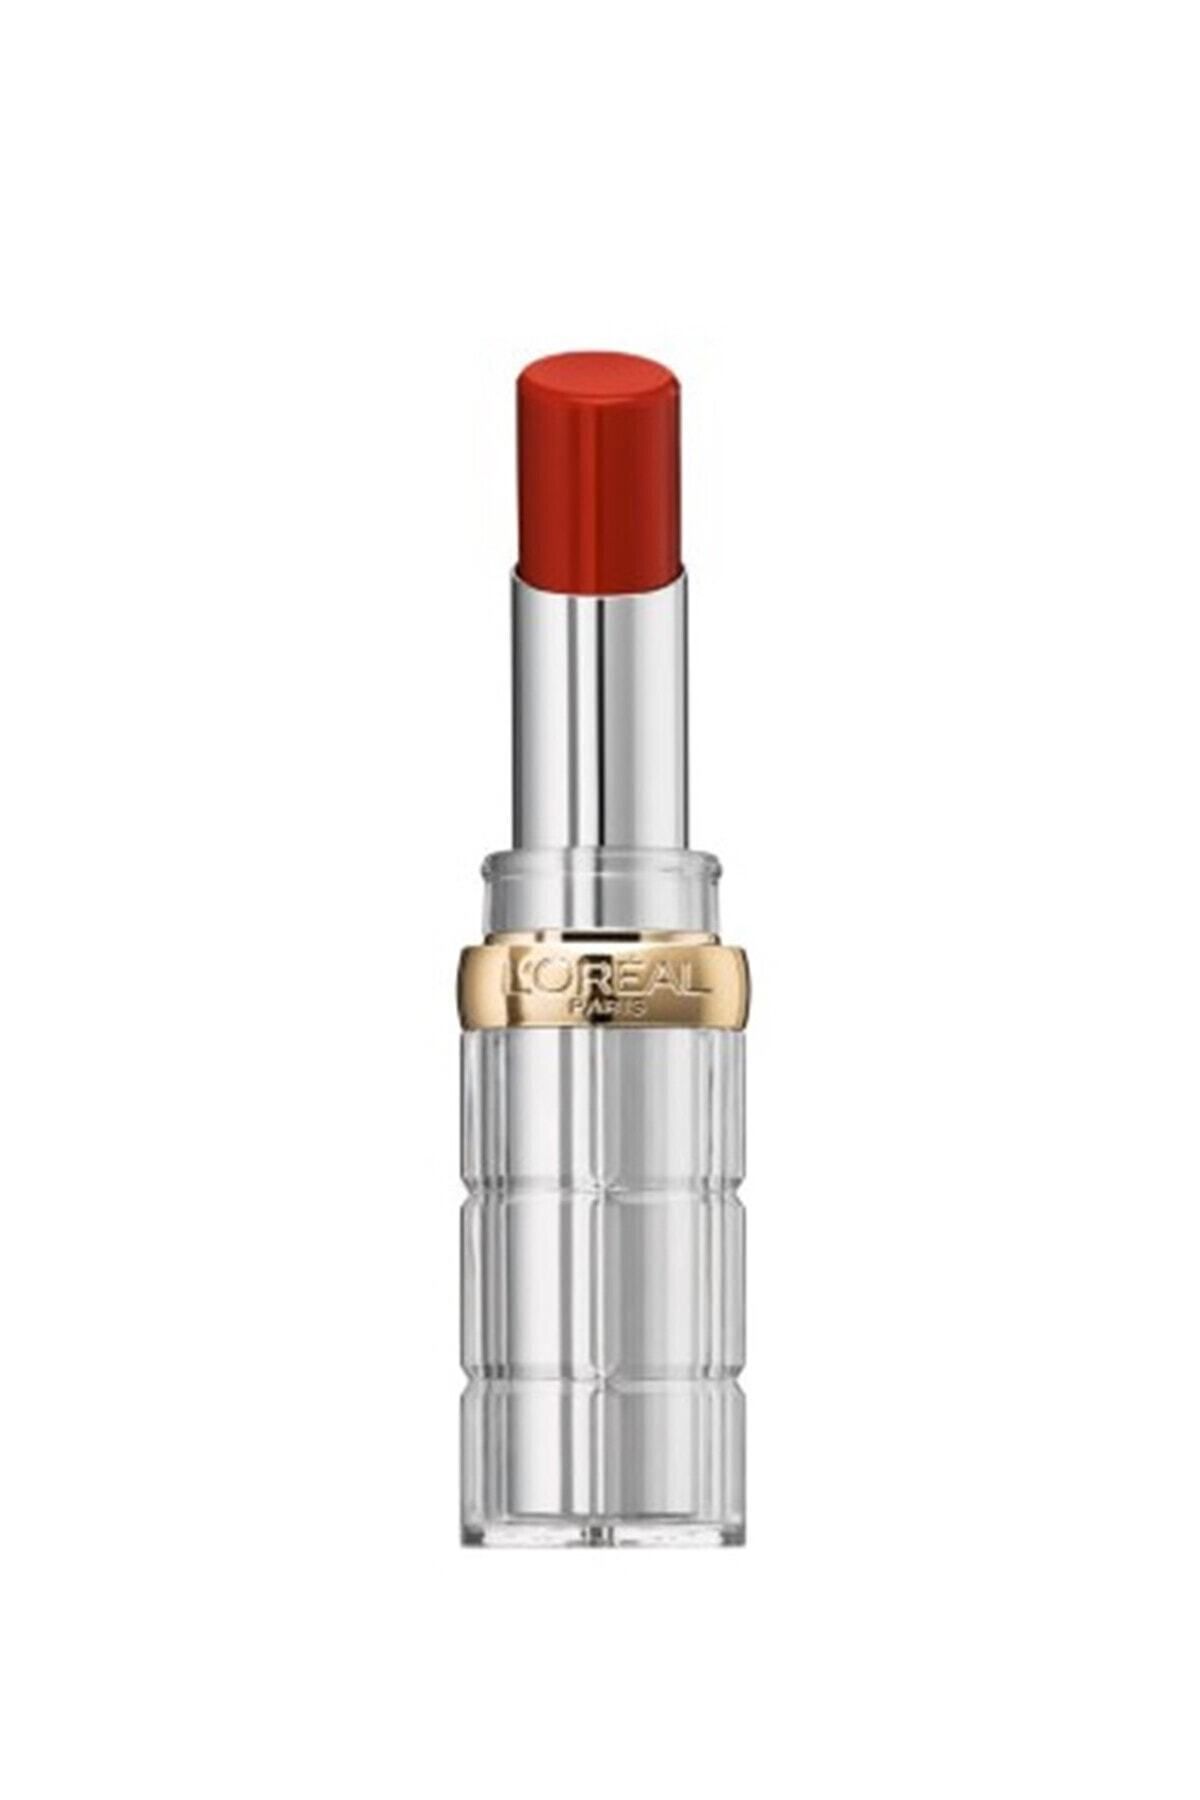 L'Oreal Paris Color Riche Shine Addiction Lipstick Ruj